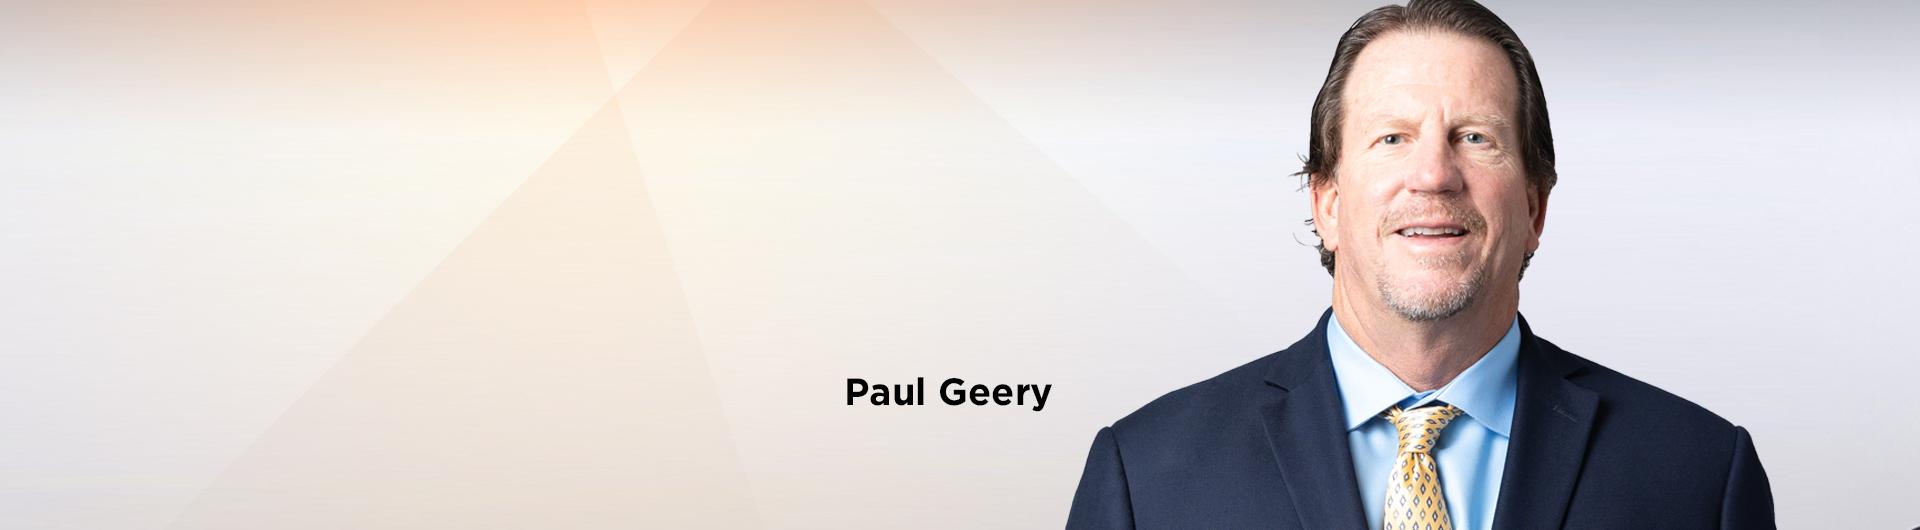 Paul Geery